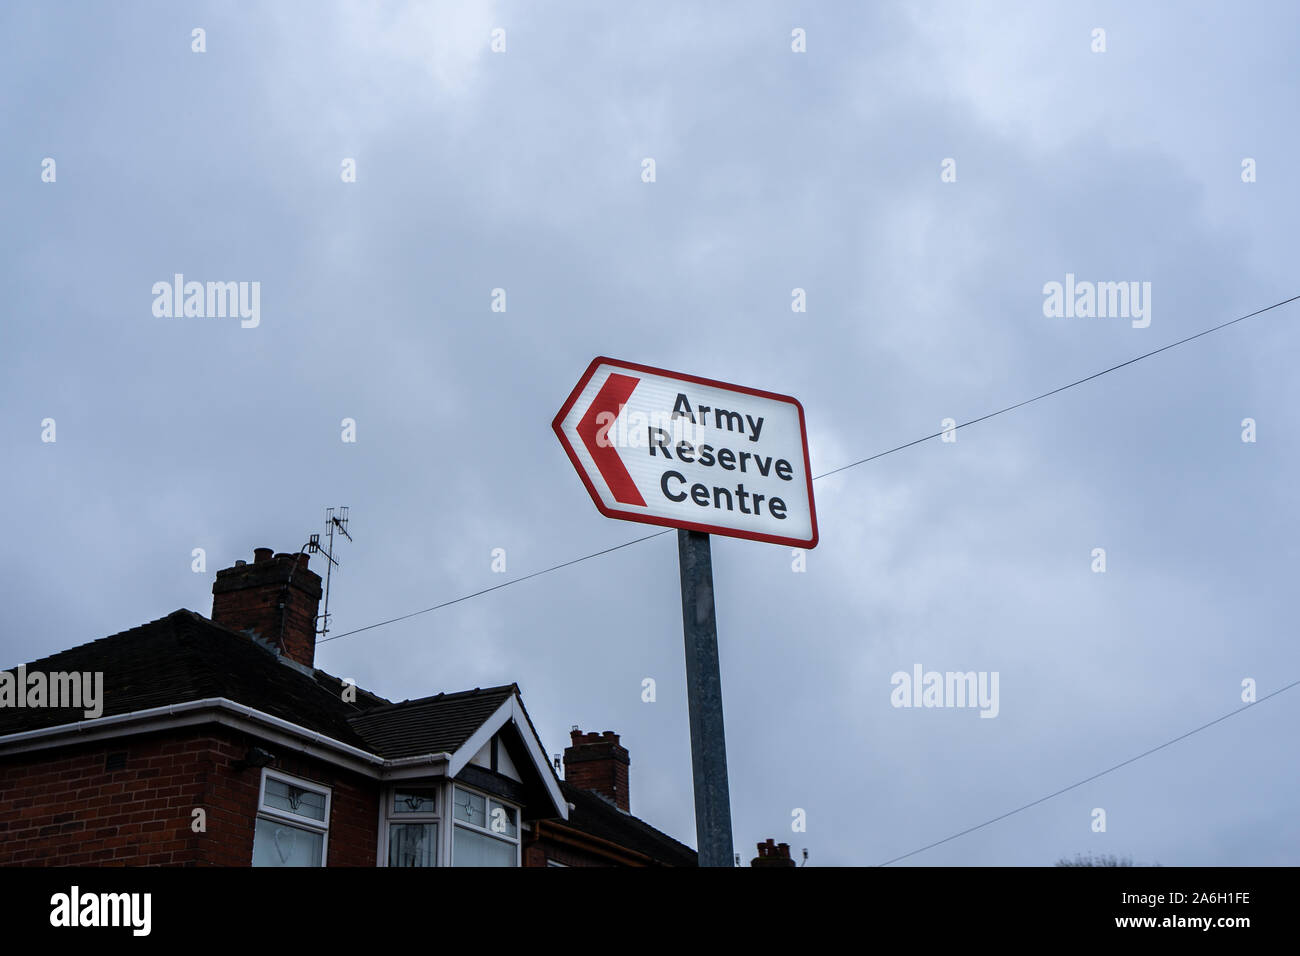 Ein Zeichen zeigen den Weg in die Armee finden in Stoke on Trent, 4.BATAILLON, die mercian Regiment, d Unternehmen, Dragon Company Stockfoto